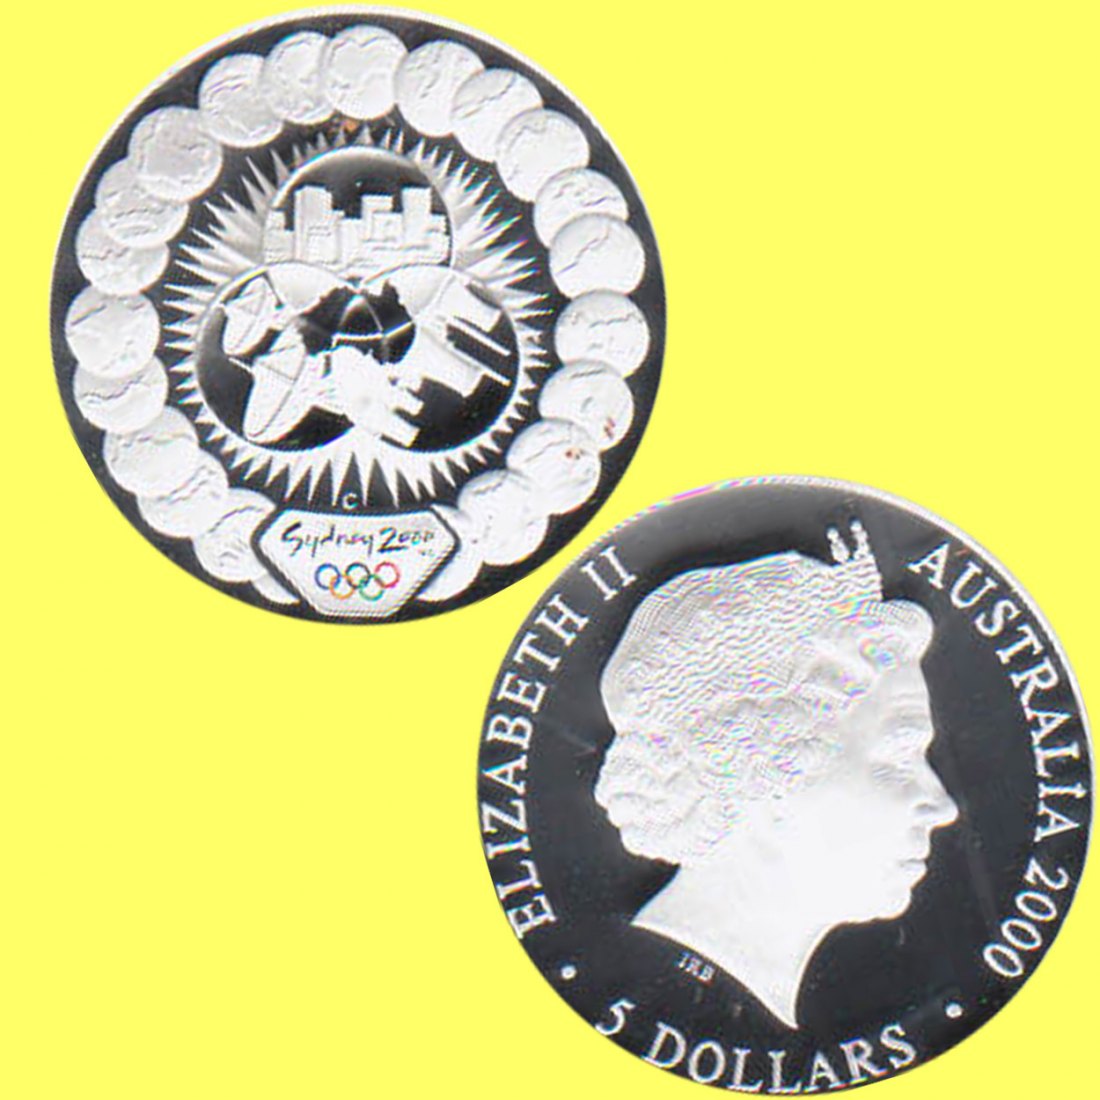  Australien 5$-Farb-Silbermünze *Errungenschaften - Olymp. 2000 in Sydney* 2000 *PP* 1oz Silber   